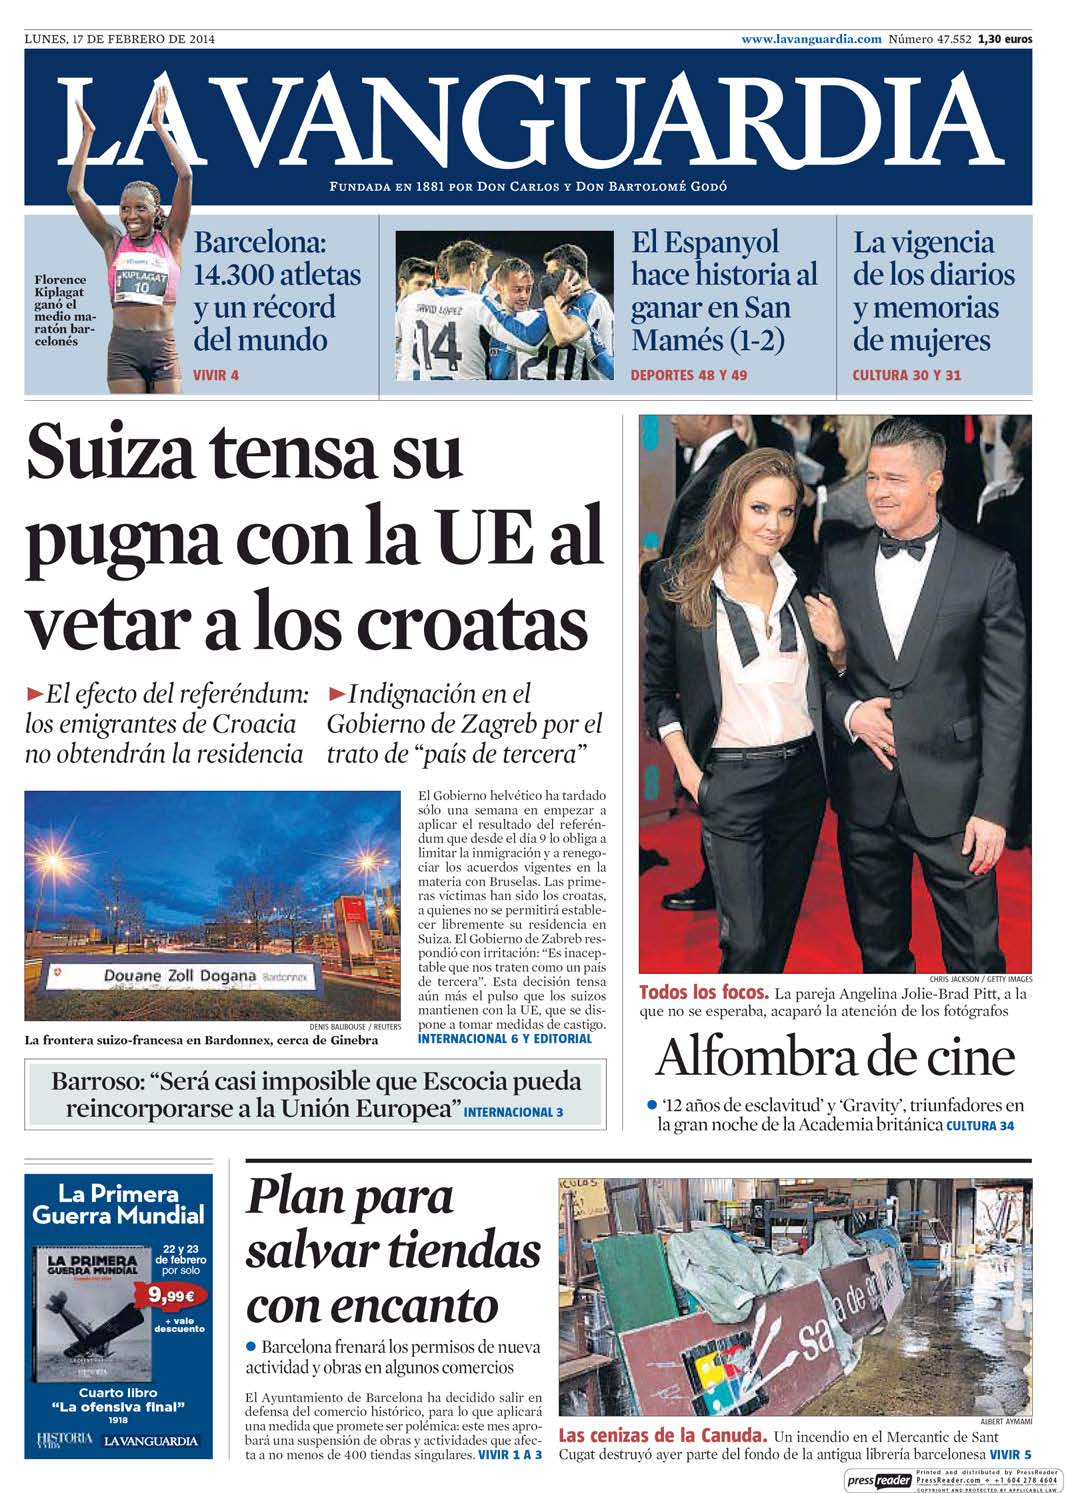 17/2/2014 Kiosko y Más - La Vanguardia - 17 feb. 2014 - Page #1 http://lector.kioskoymas.